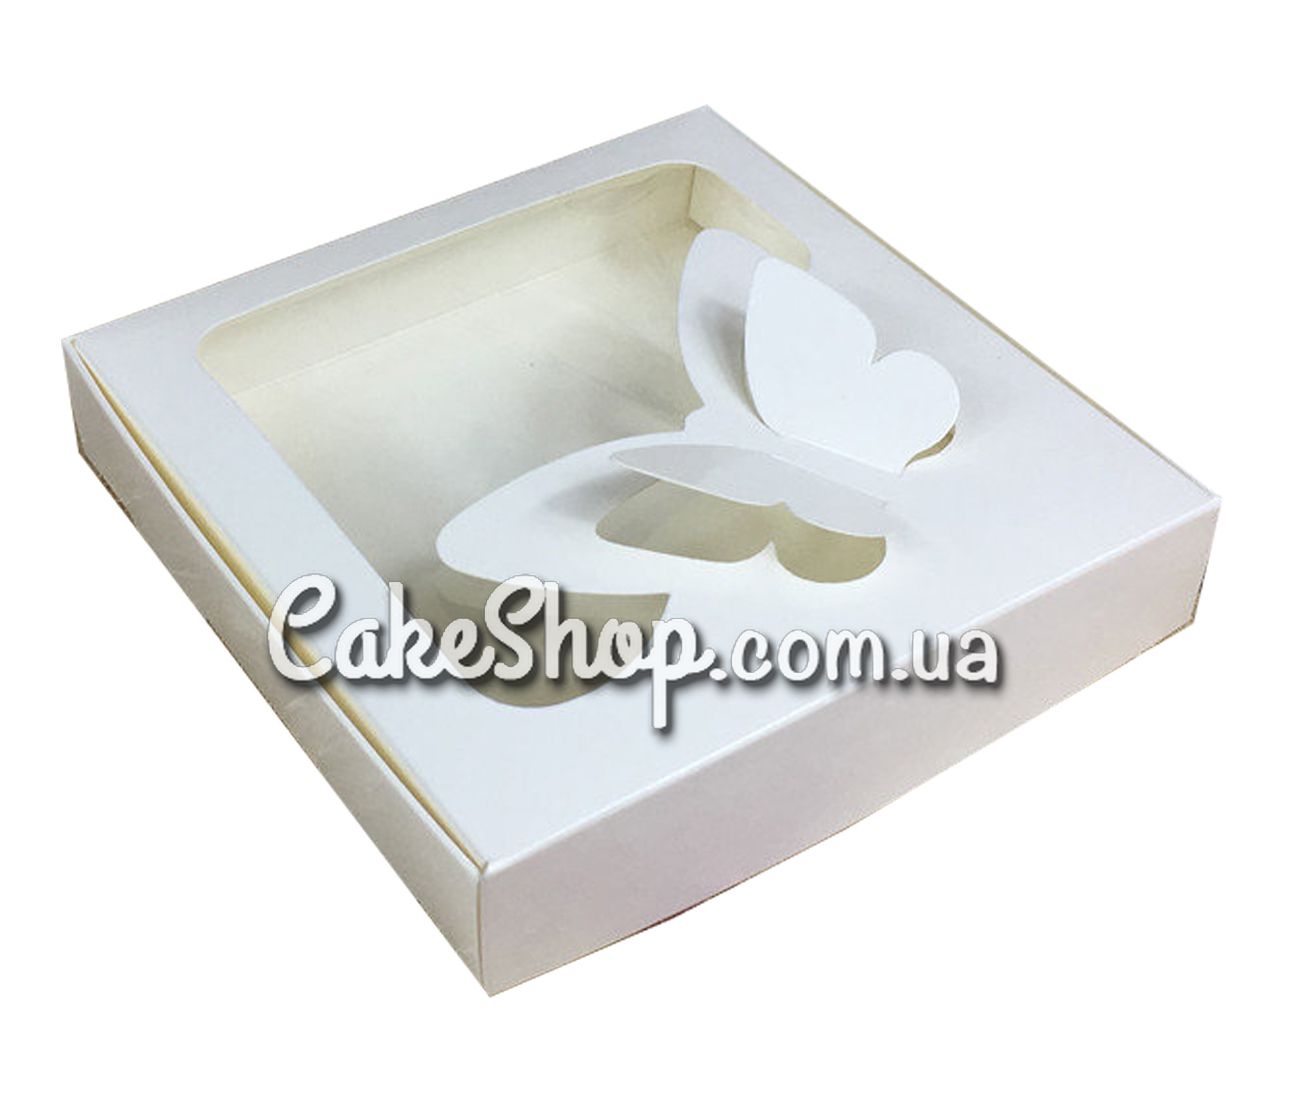 ⋗ Коробка для пряников с бабочкой Молочная, 15х15х3 см купить в Украине ➛ CakeShop.com.ua, фото